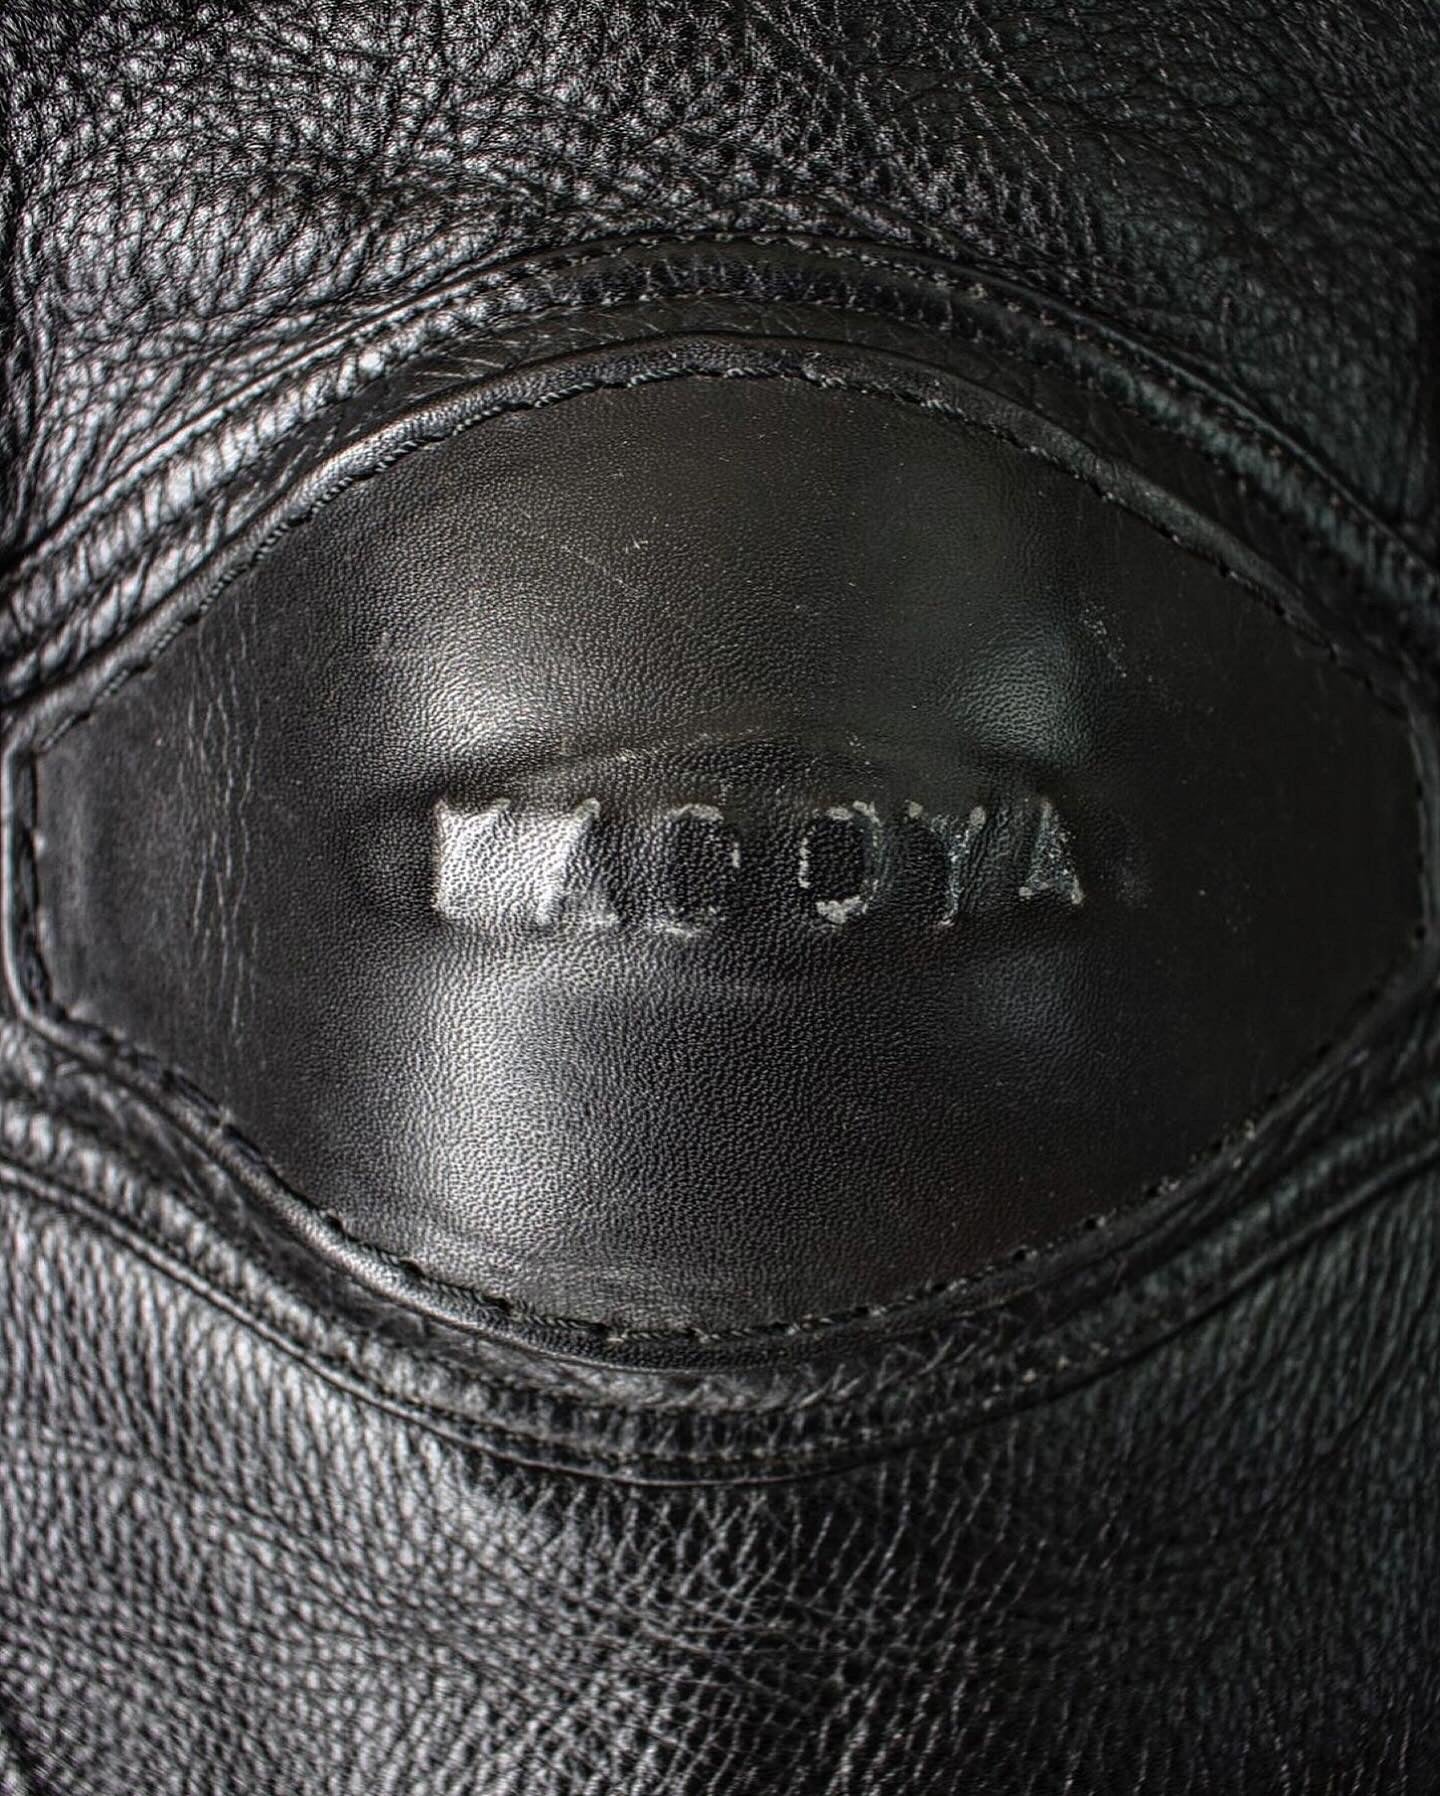 Kadoya 00s Padded Cow Leather Motocycle Pants